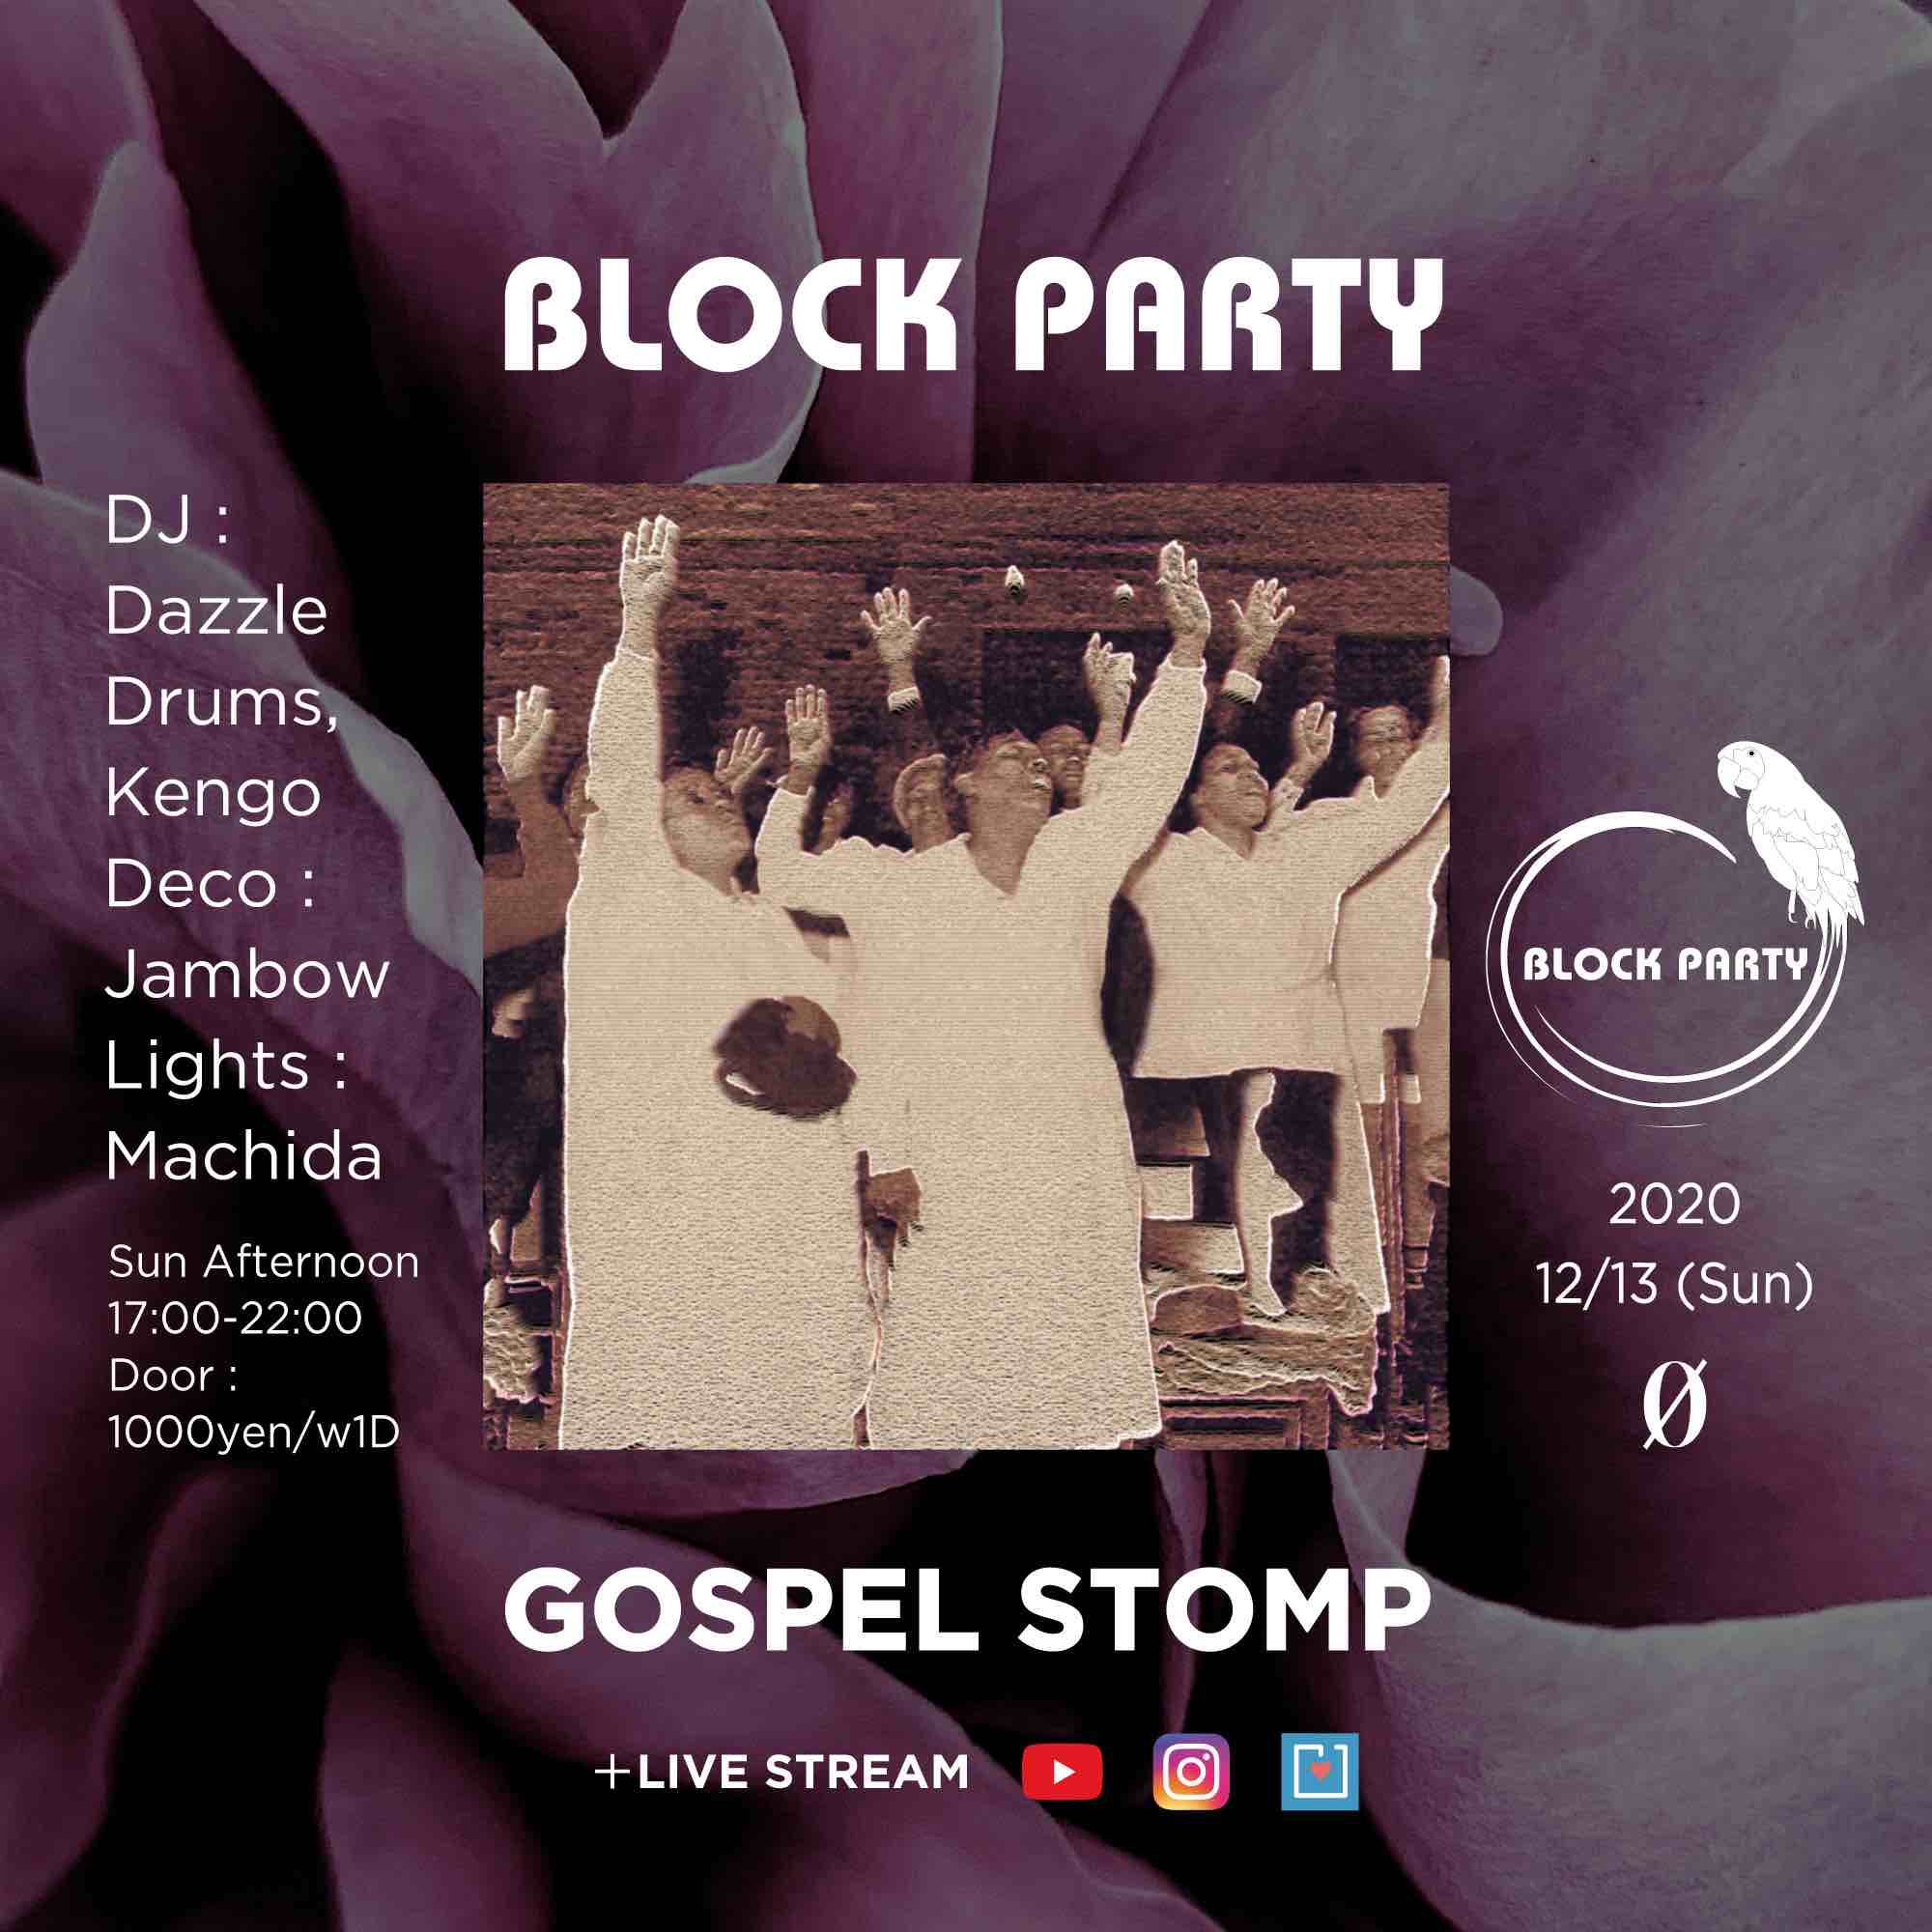 Block Party “Gospel Stomp” + Live Stream @ 0 Zero